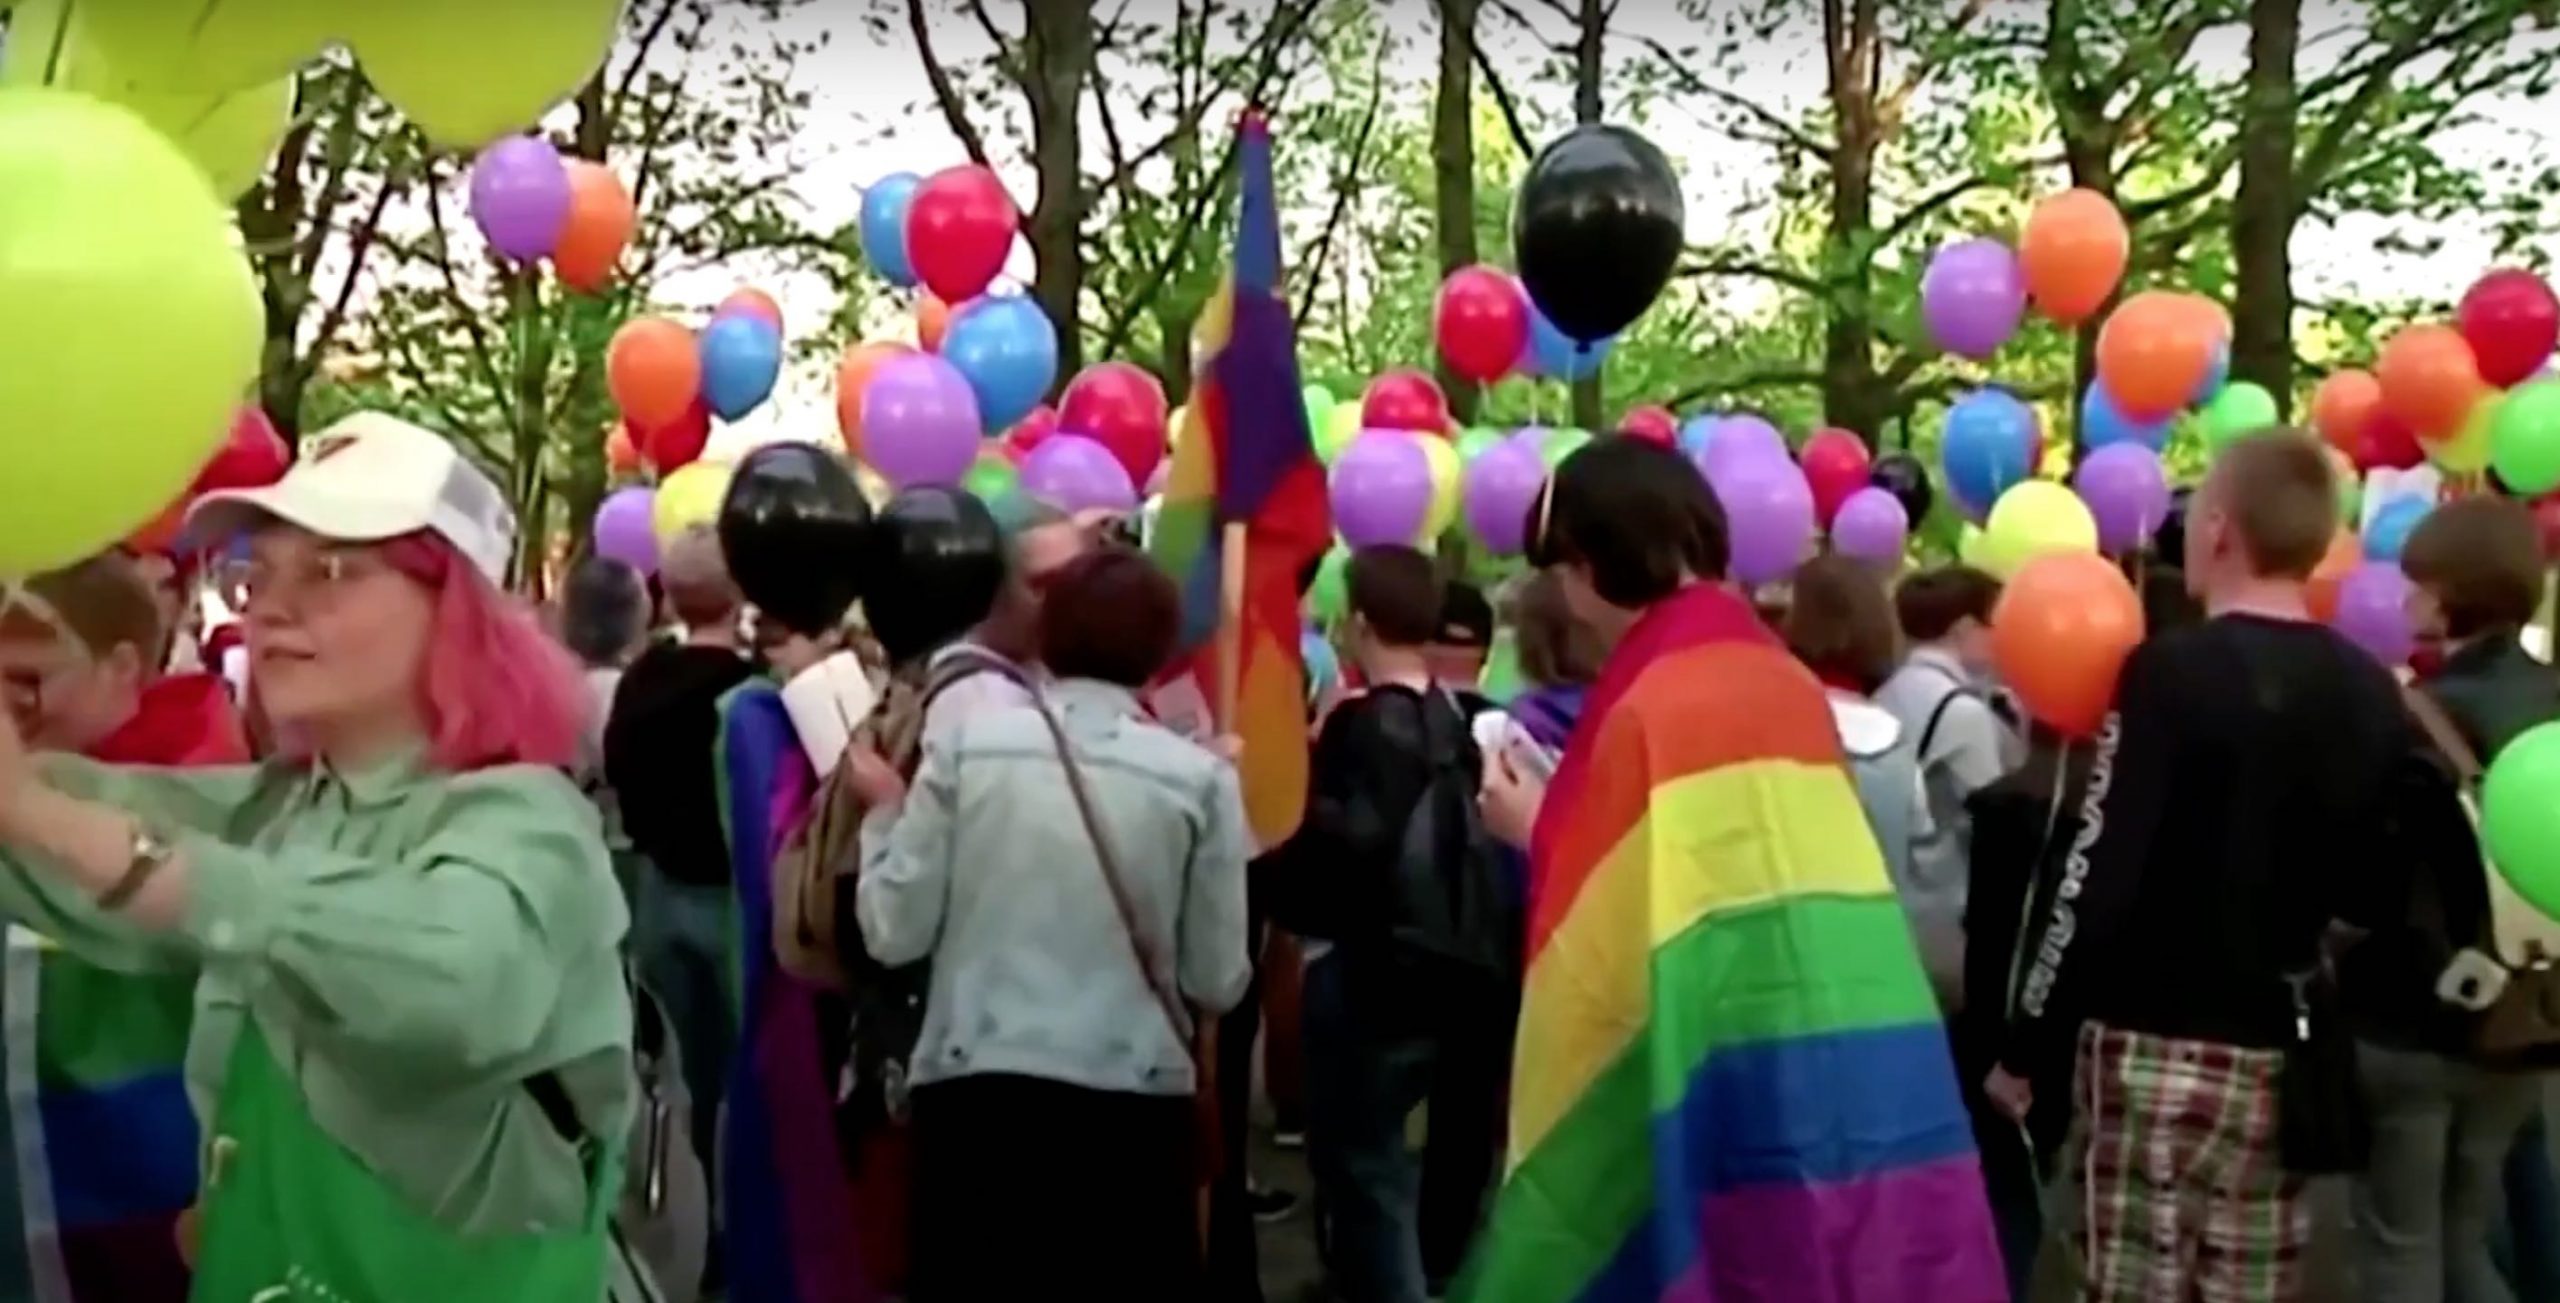 Lo scorso 30 novembre, la Corte suprema della Federazione russa ha approvato la mozione del ministero della Giustizia russo di riconoscere il “movimento internazionale LGBT” come “organizzazione estremista”. La decisione della Corte suprema apre le porte a un nuovo drammatico capitolo della repressione del Cremlino nei confronti della comunità queer.